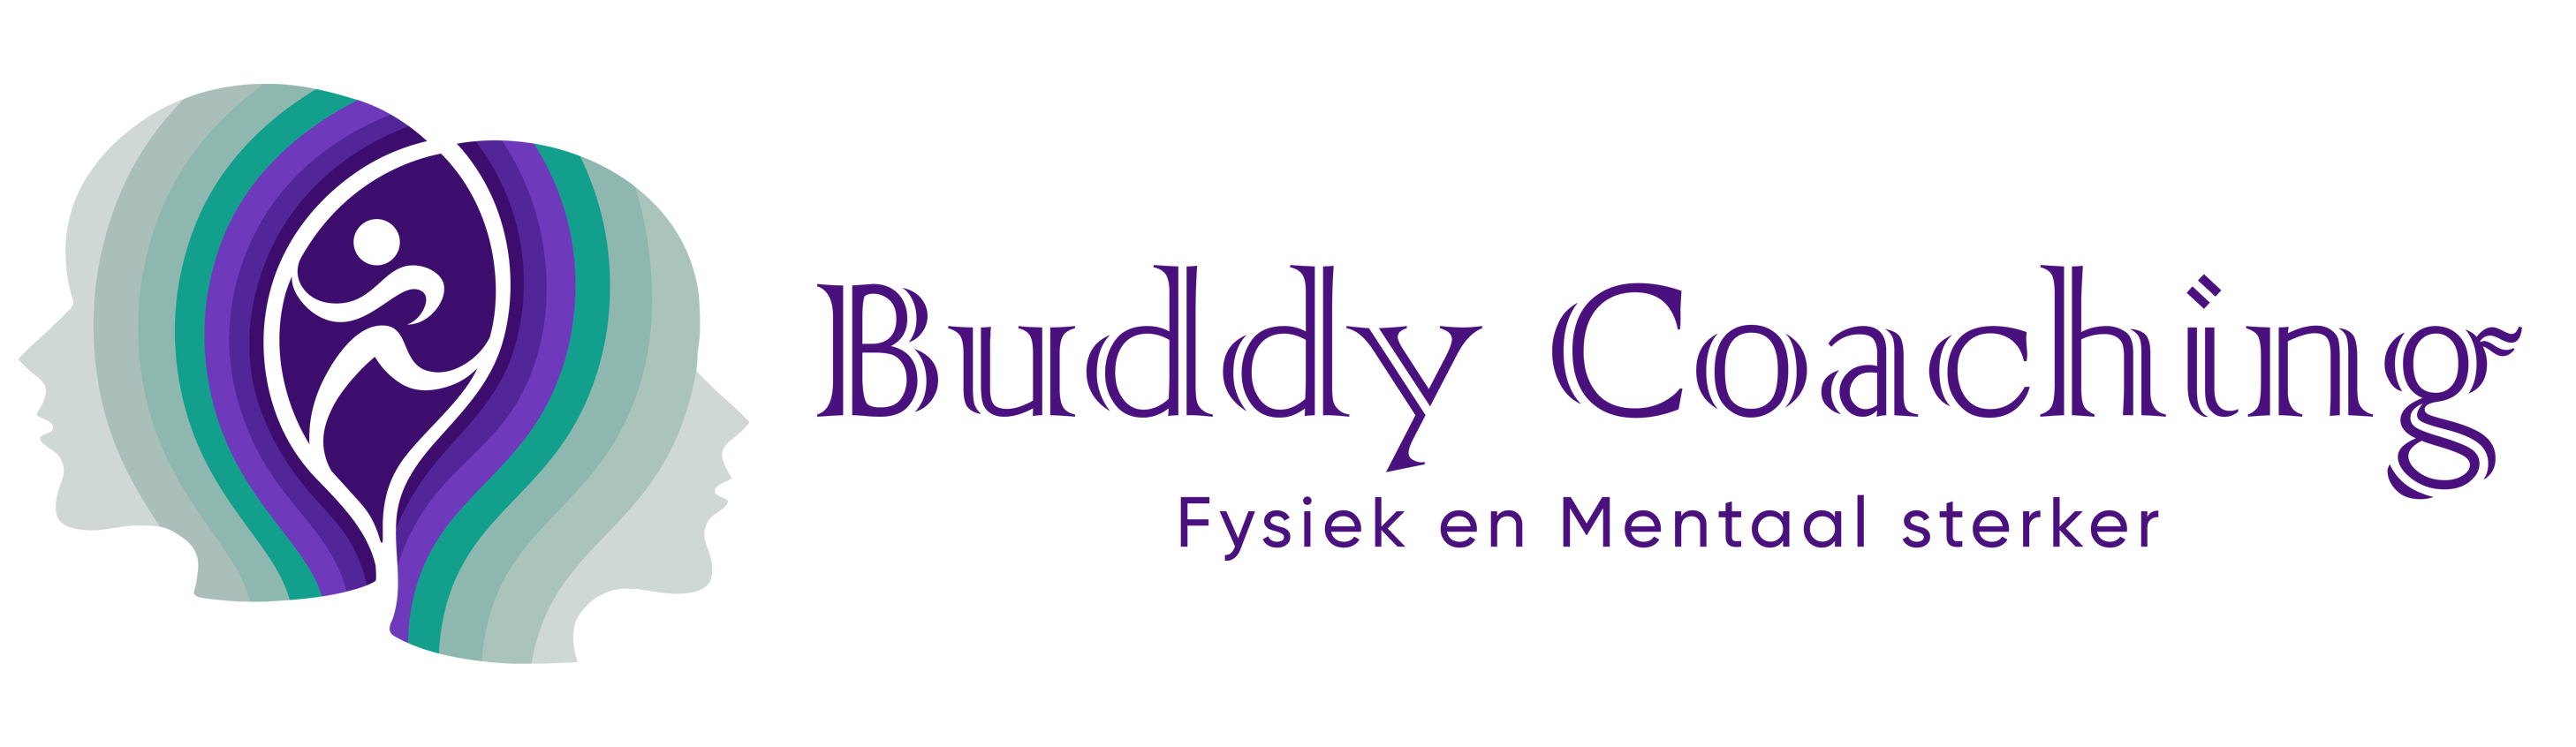 Buddy Coaching Logo